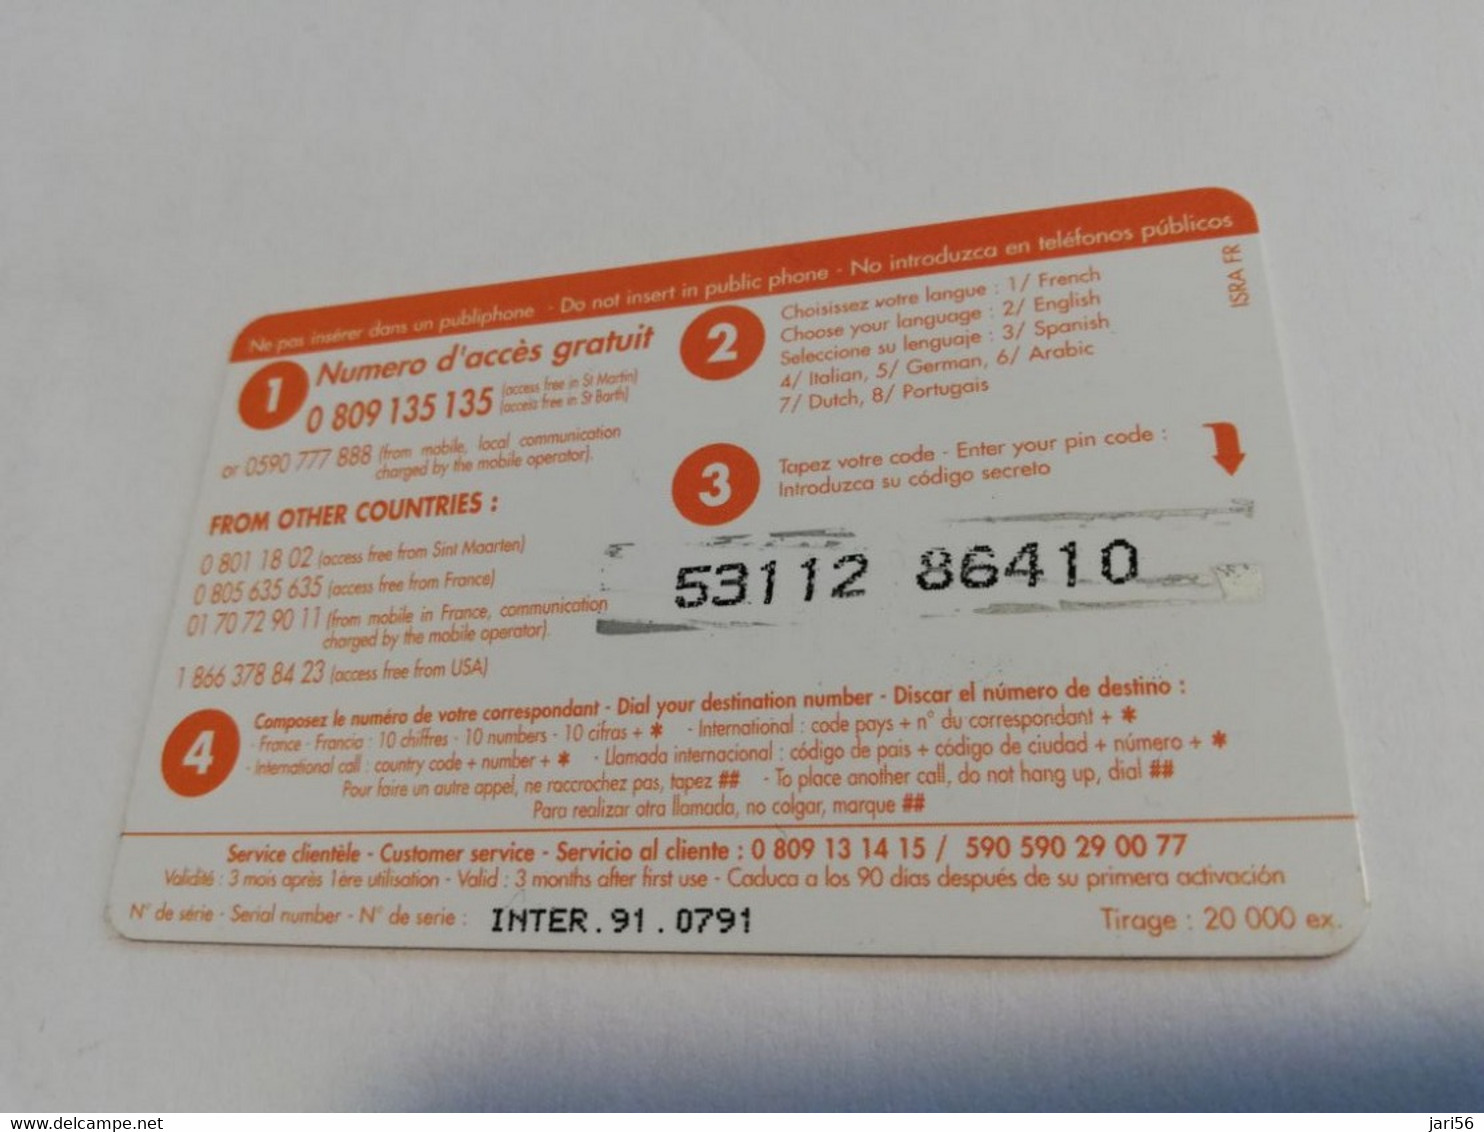 ST MARTIN / INTERCARD  3 EURO  OCTROI DE COLE BAY           NO 091   Fine Used Card    ** 6577 ** - Antille (Francesi)